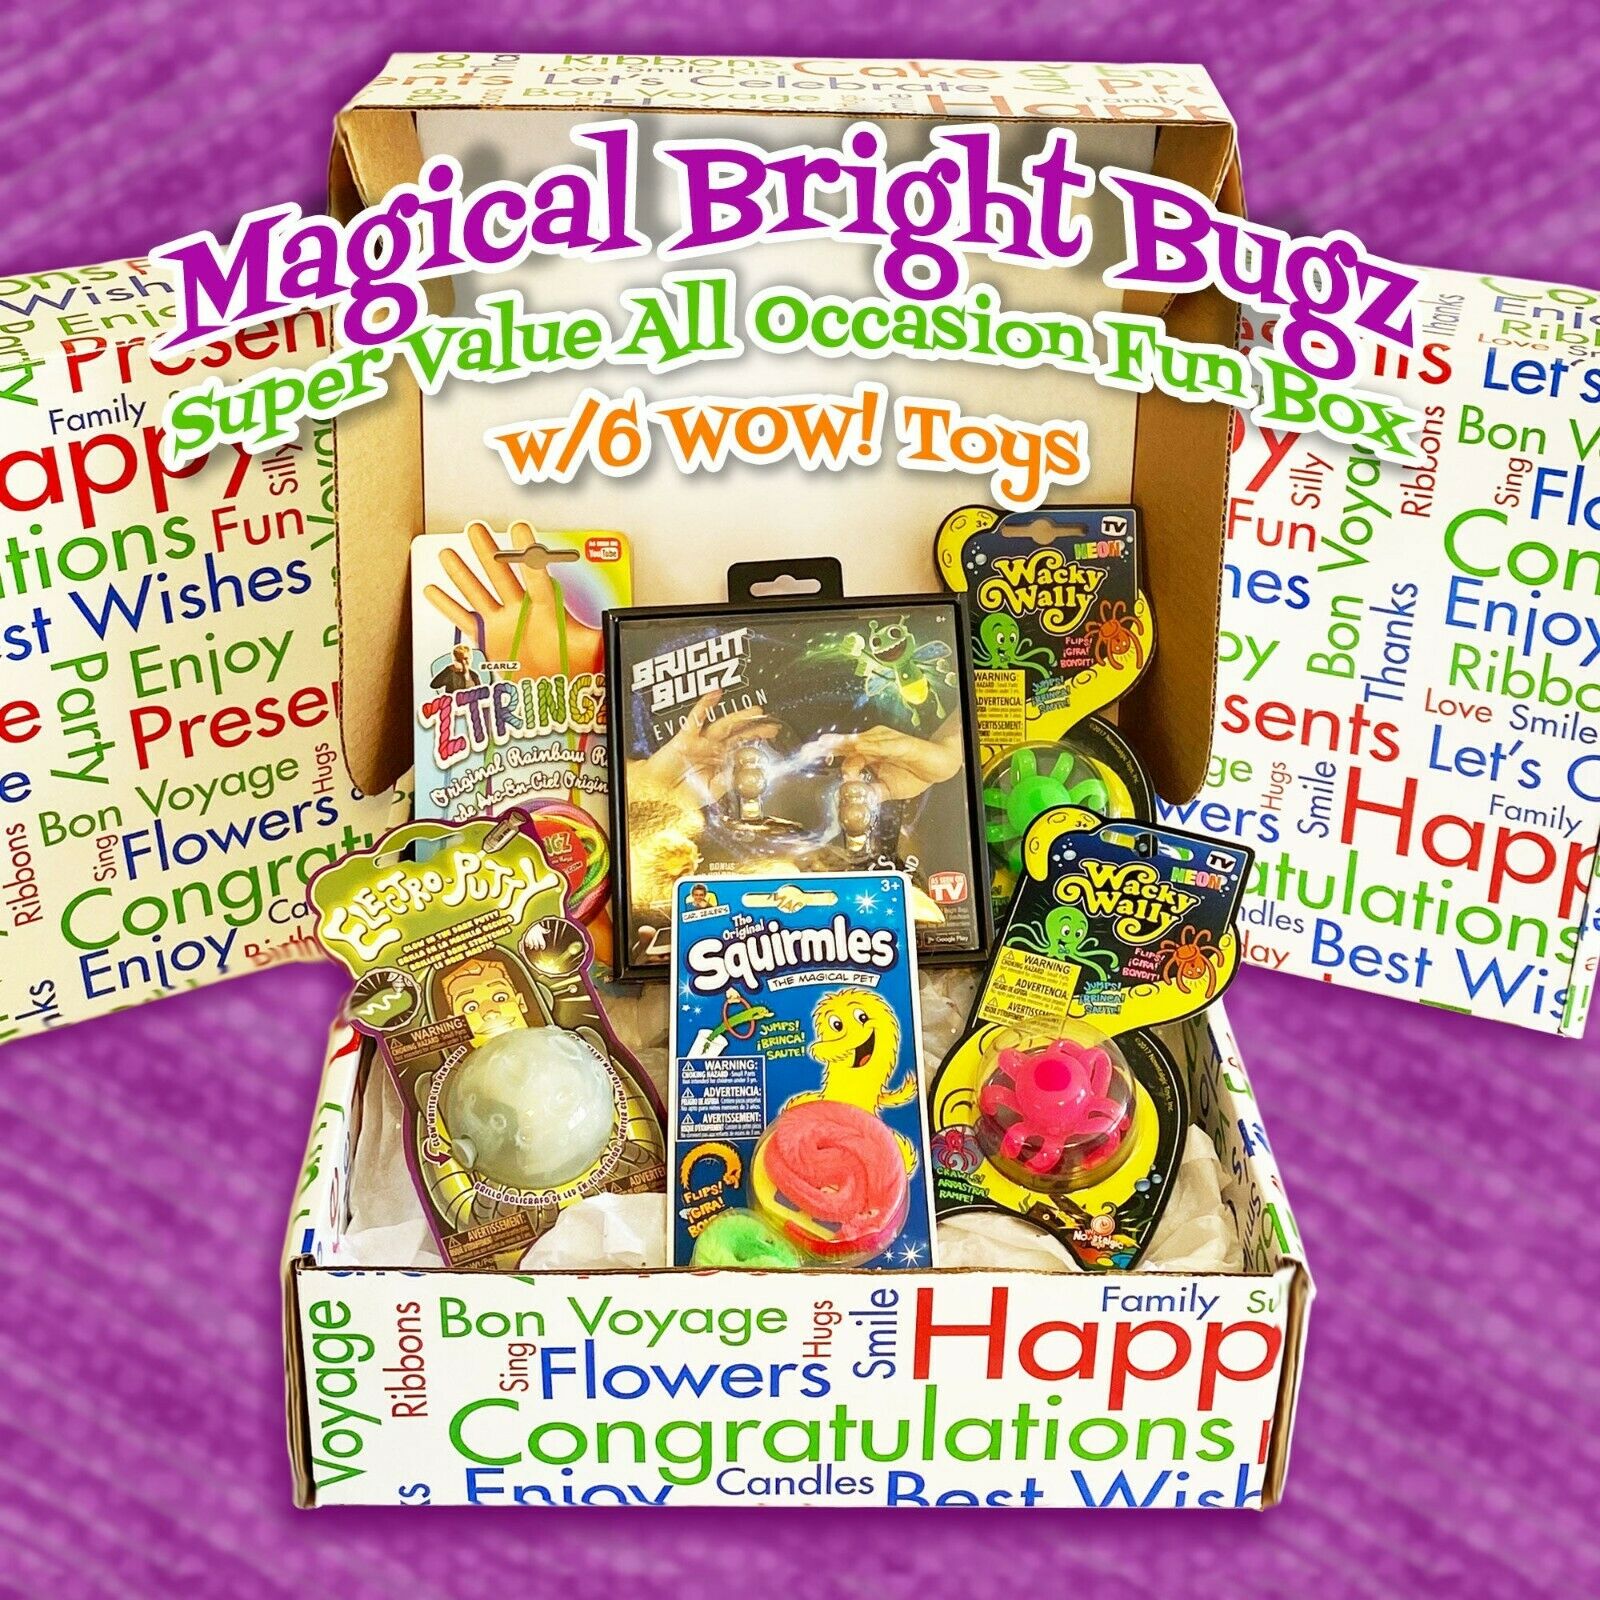 Bright Bugz All Occasion Fun Box + 5 Toys-over $65 Value-45% Off!